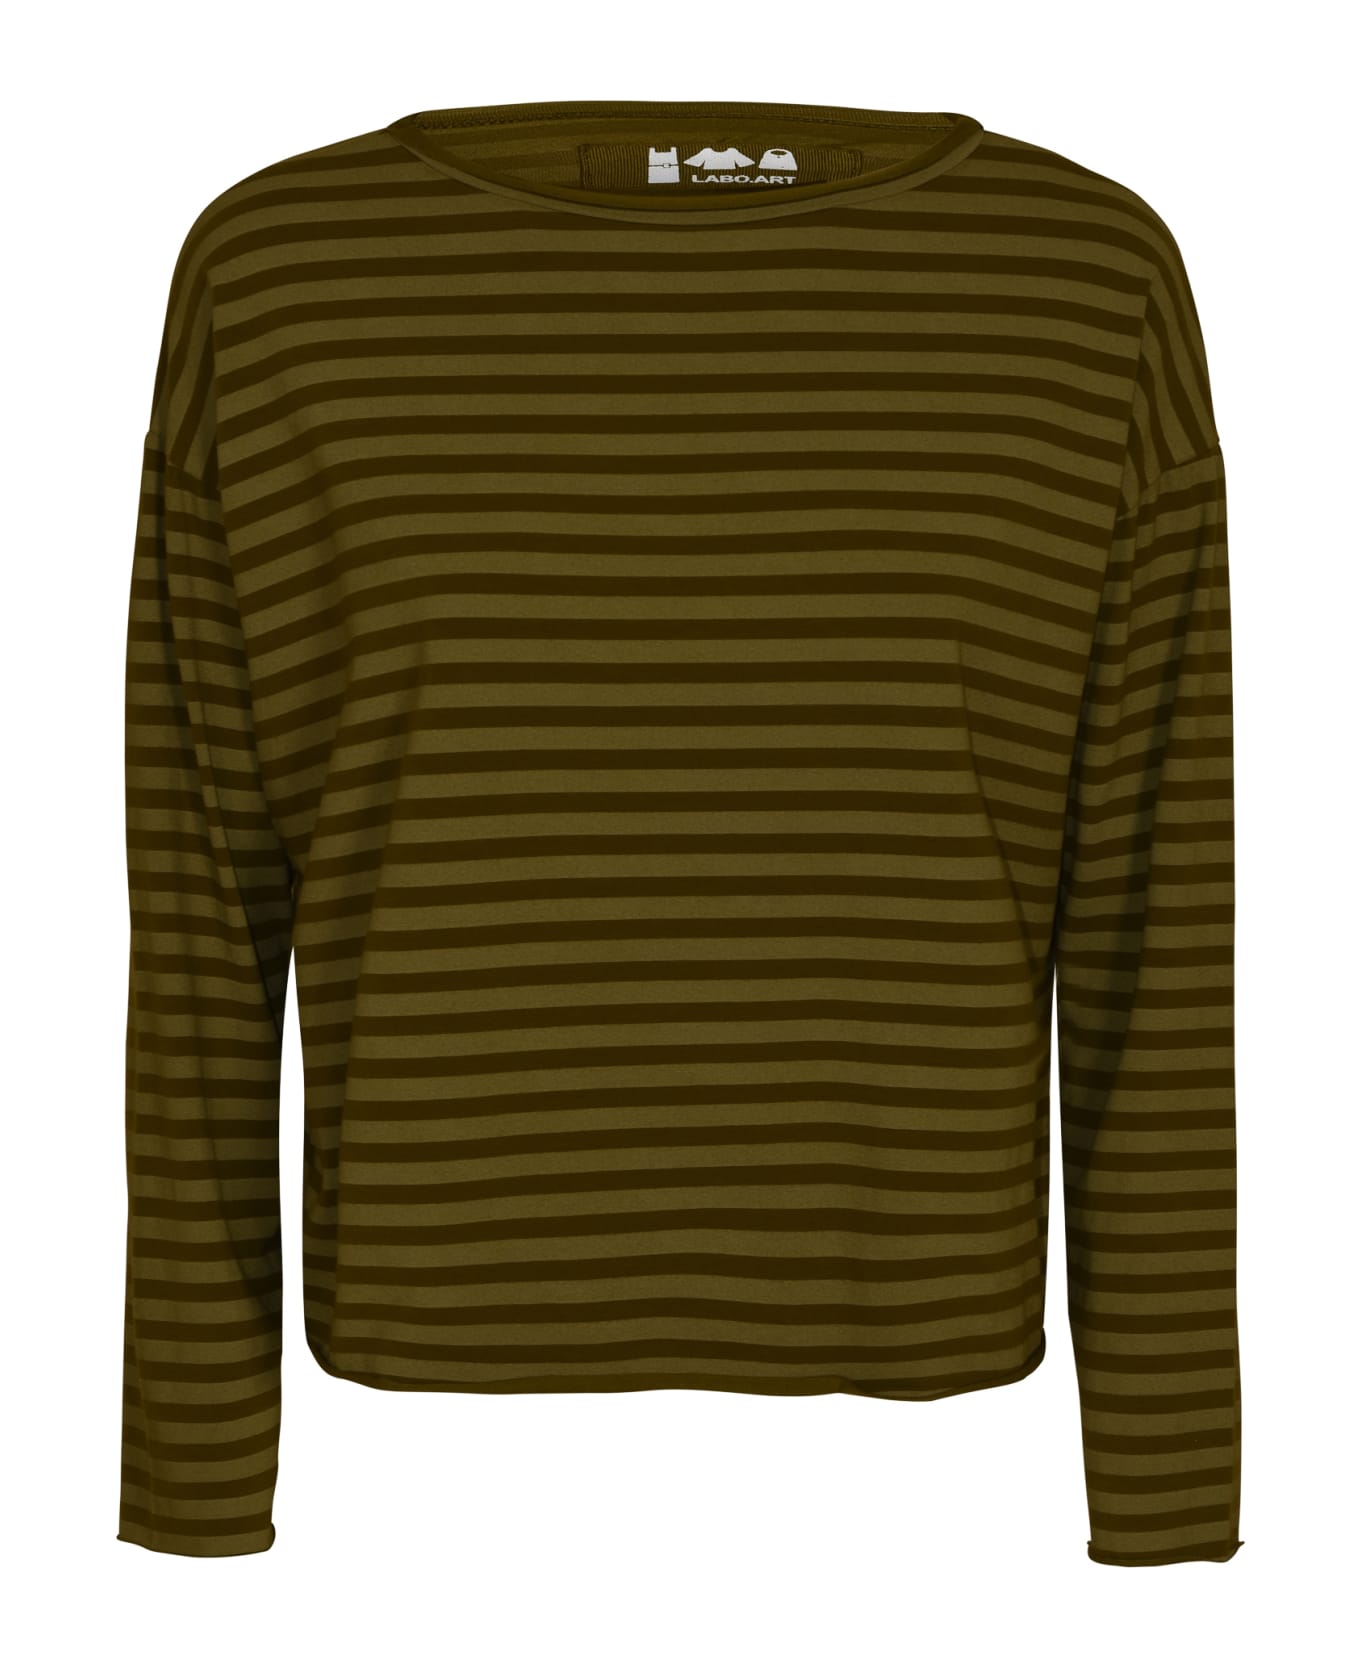 Labo.Art Stripe Sweatshirt - Lizard